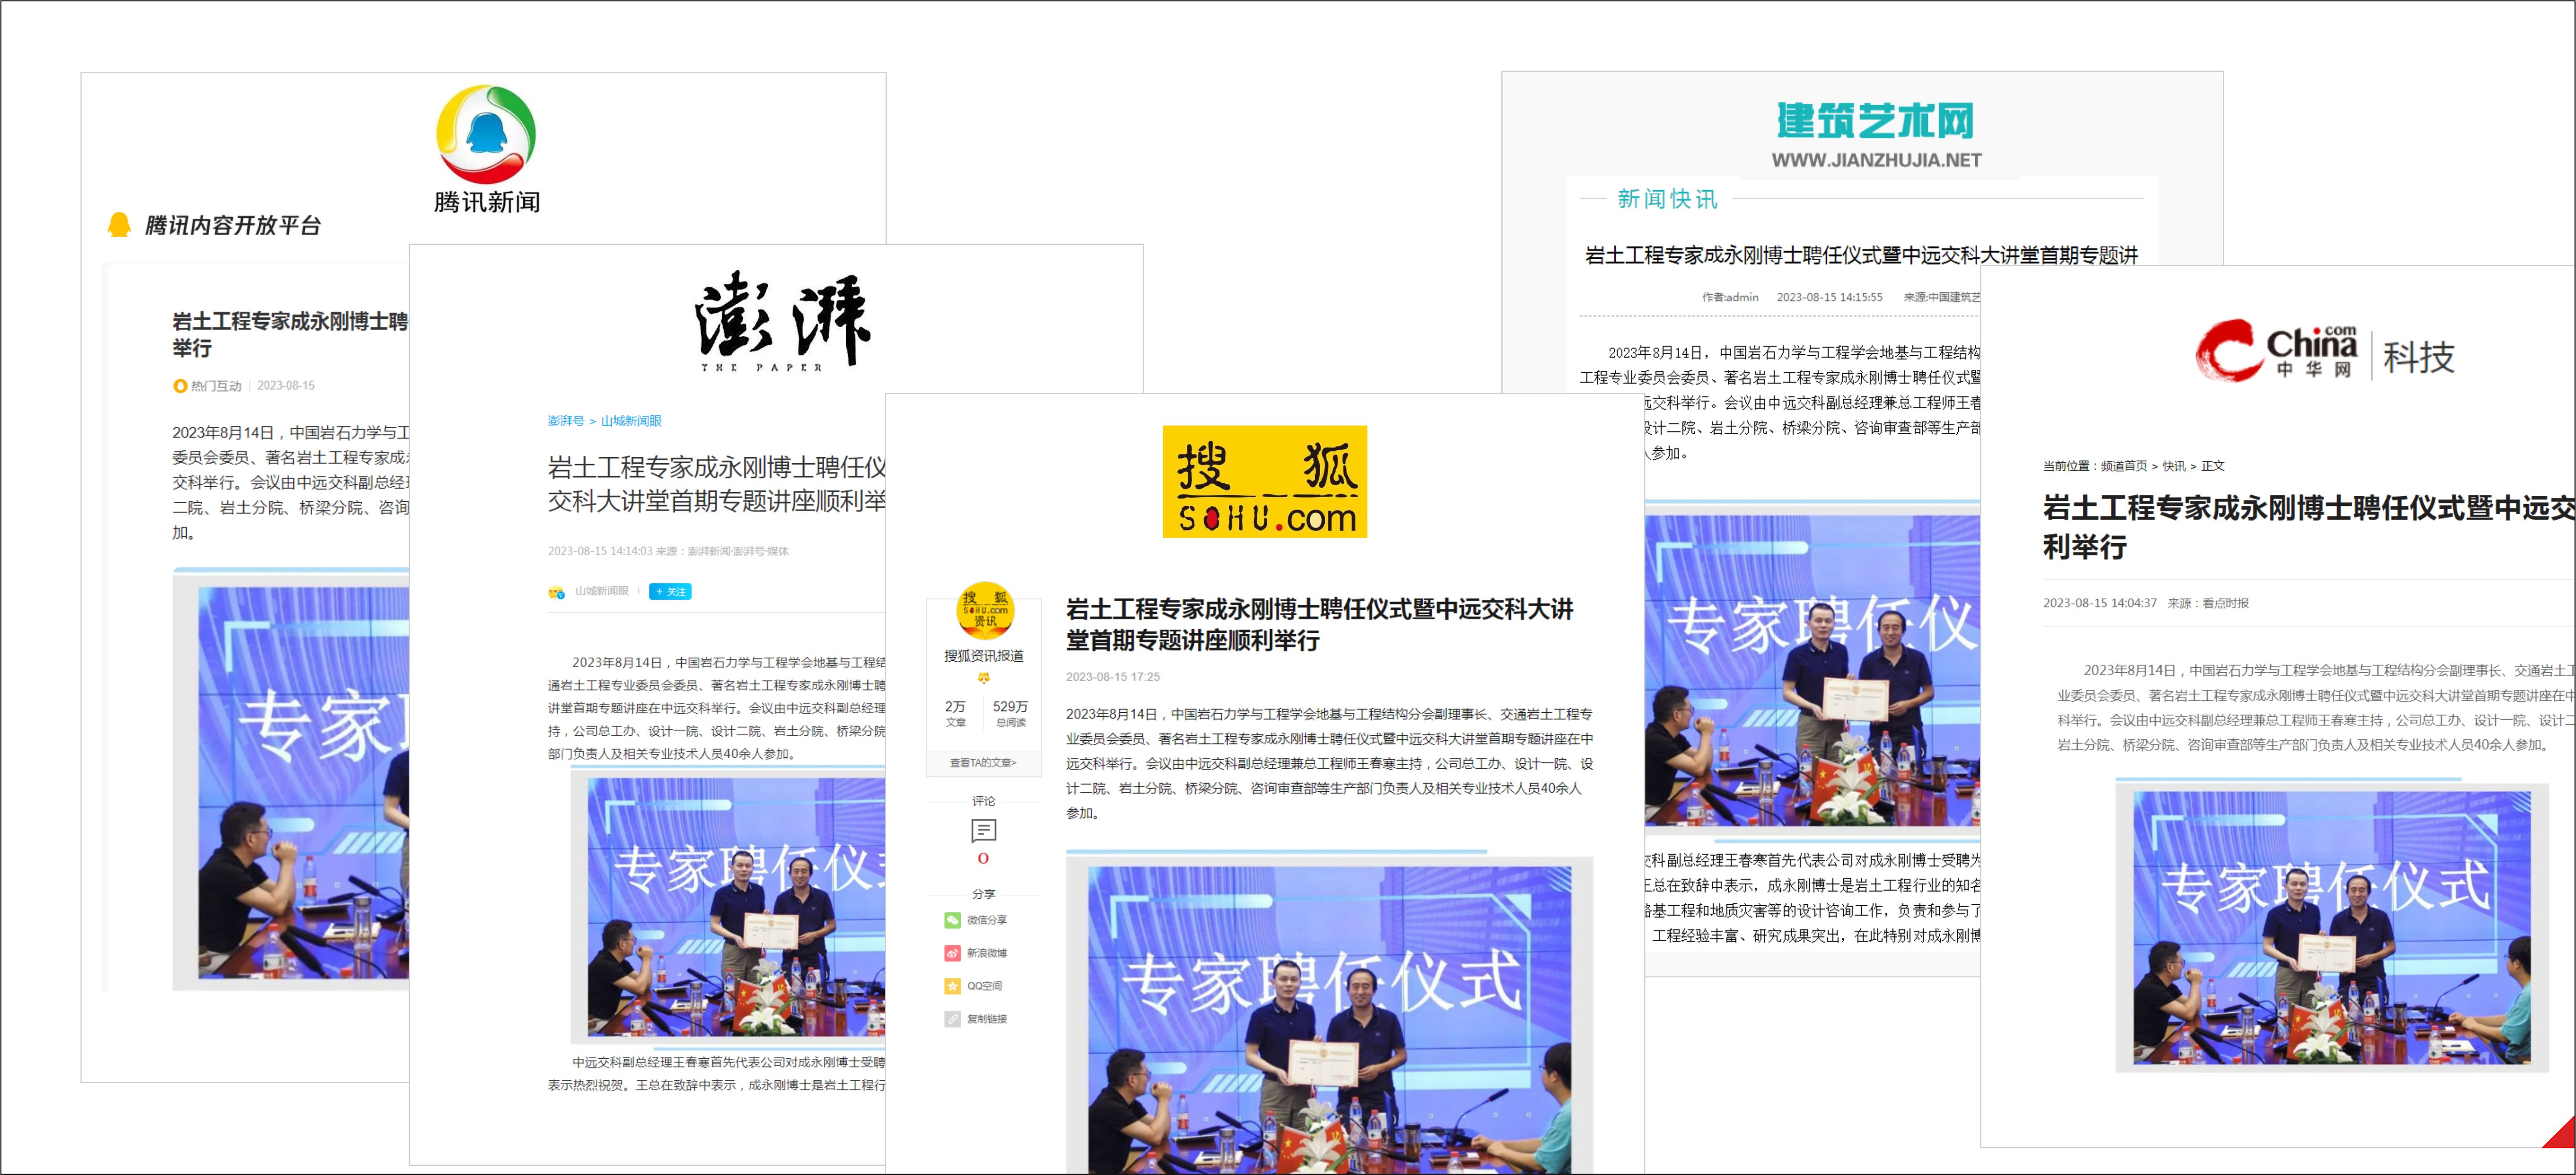 媒体聚焦 | 搜狐腾讯等多家媒体转载报道“交科大讲堂”！